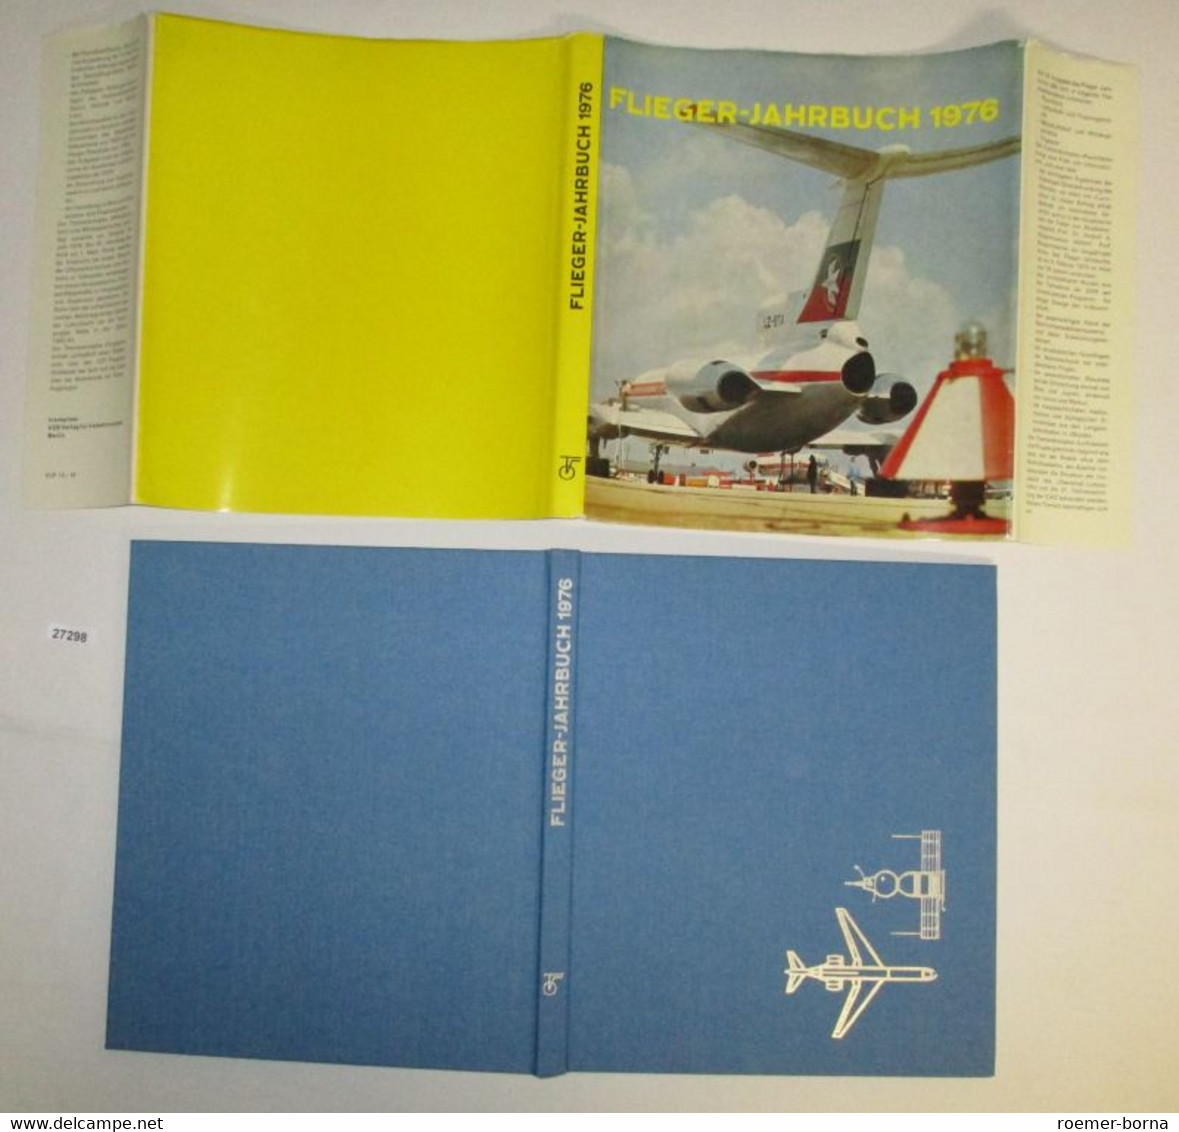 Flieger Jahrbuch 1976 - Calendarios